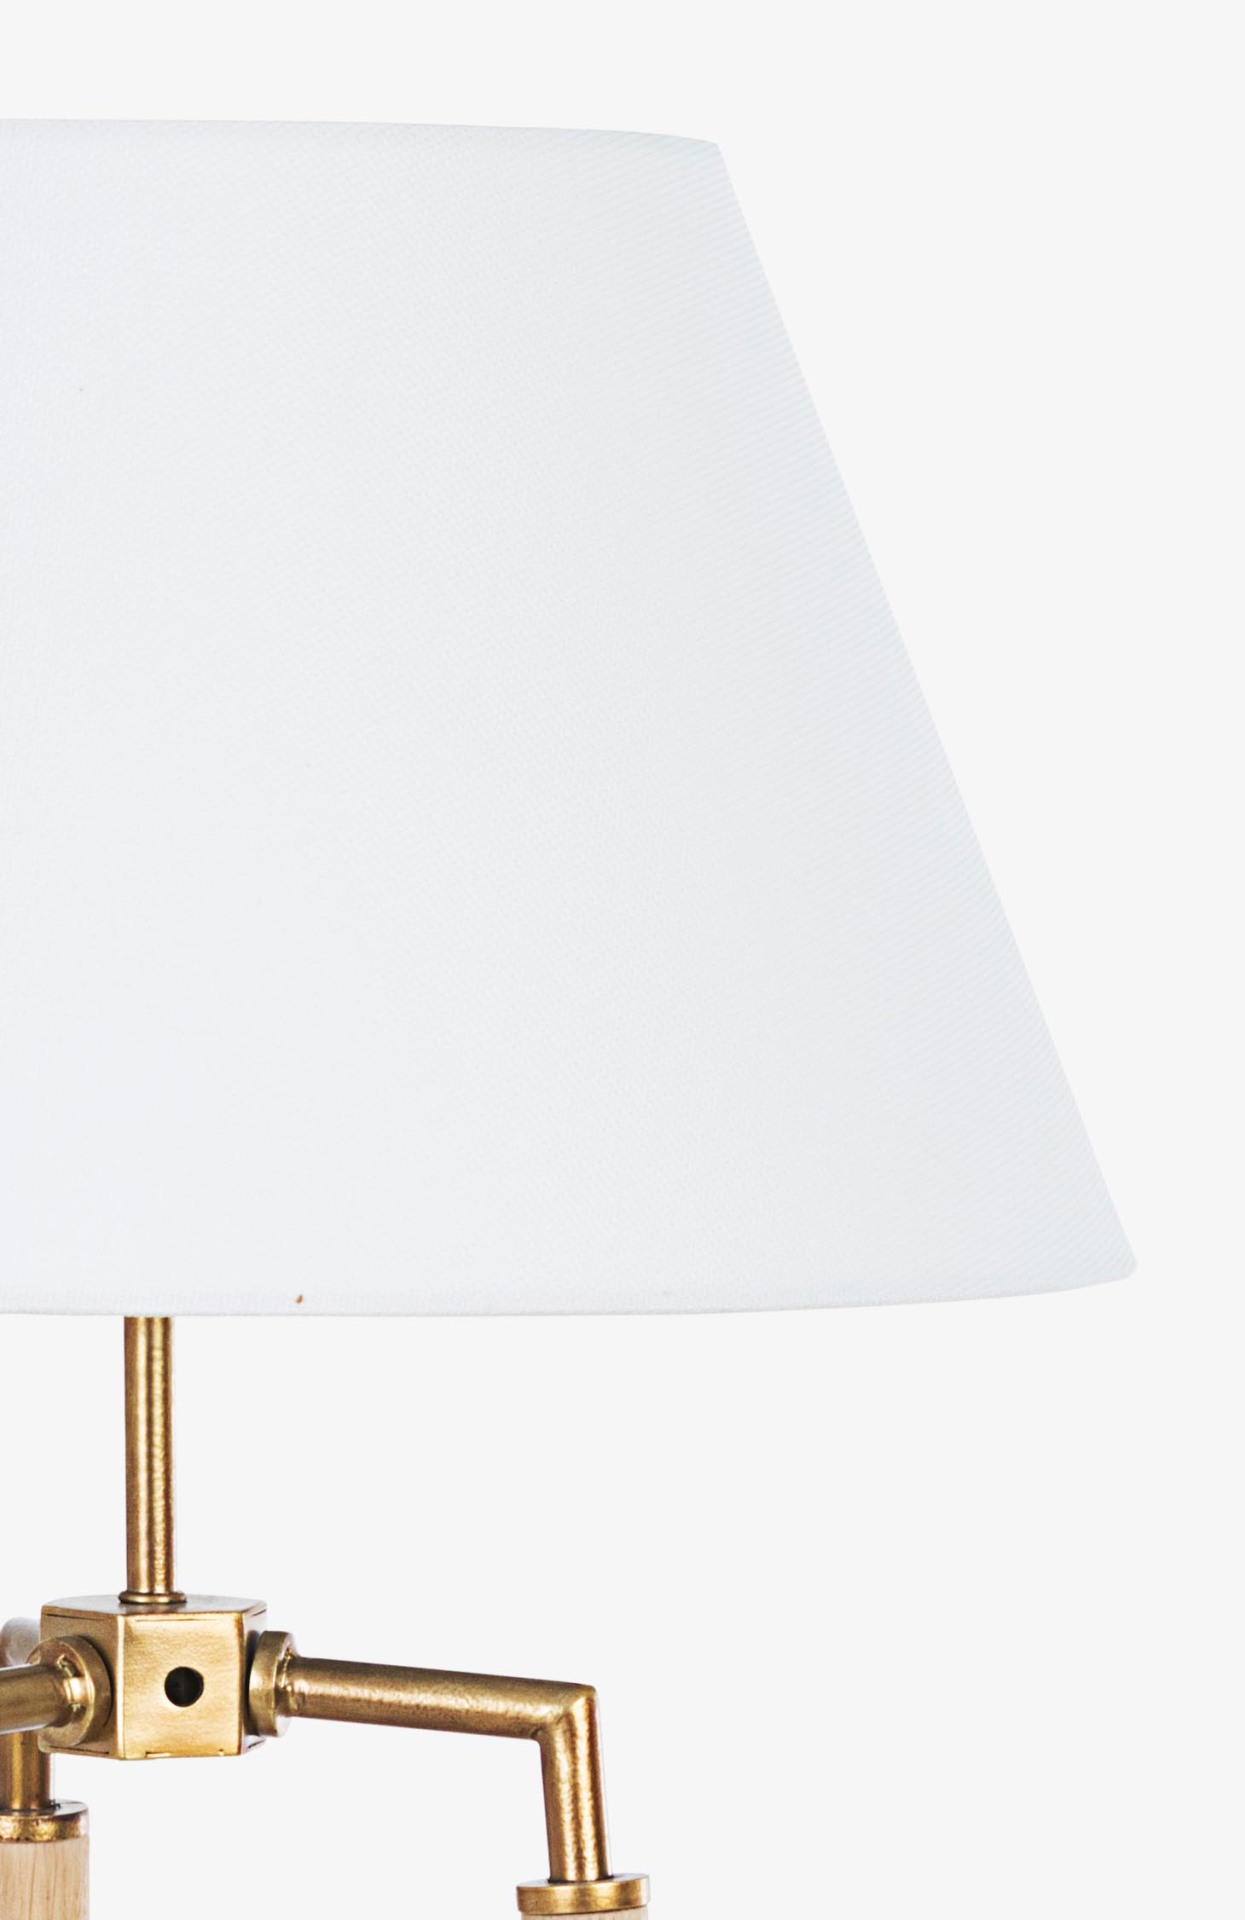 Die Tischleuchte Ellinor überzeugt mit ihrem klassischen Design. Gefertigt wurde sie aus Metall, welches einen Messing Farbton besitzt. Der Lampenschirm ist aus Baumwolle und hat eine weiße Farbe. Die Lampe besitzt eine Höhe von 65,5 cm.